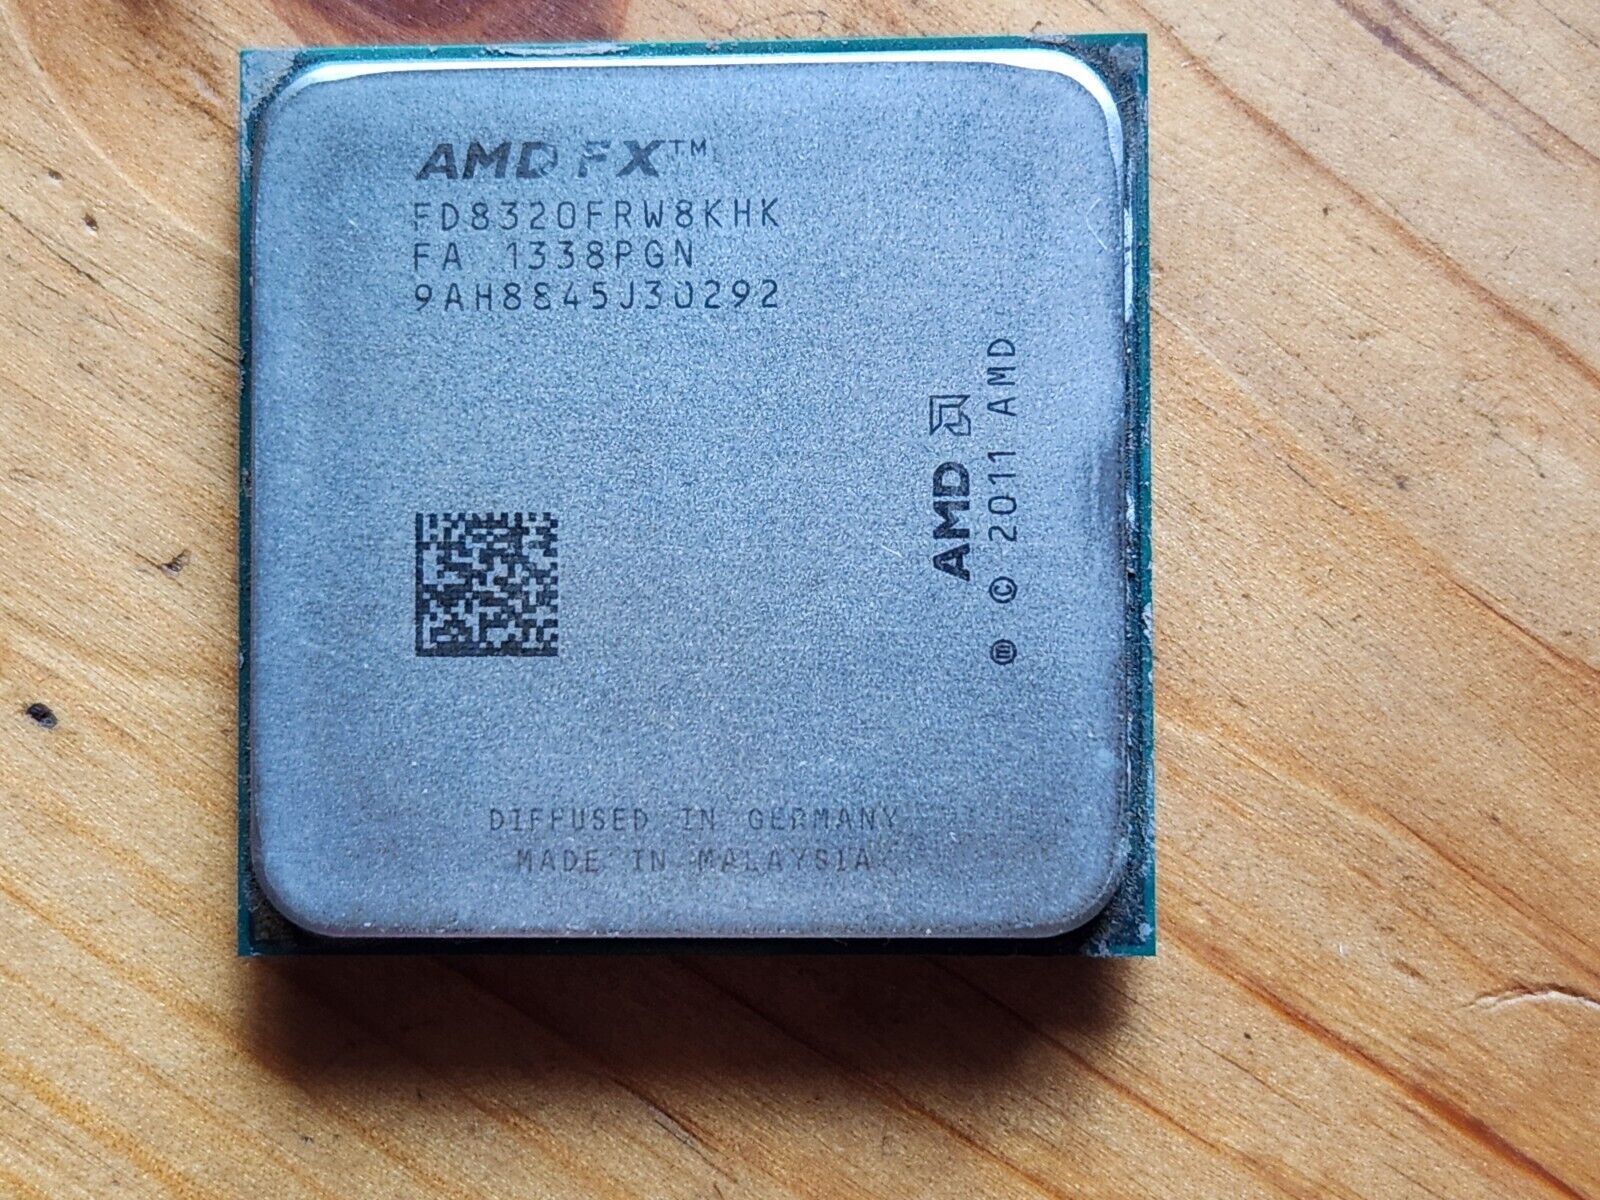 AMD FX-8320 8 Core 3.5GHz Socket AM3+ CPU FD8320FRW8KHK